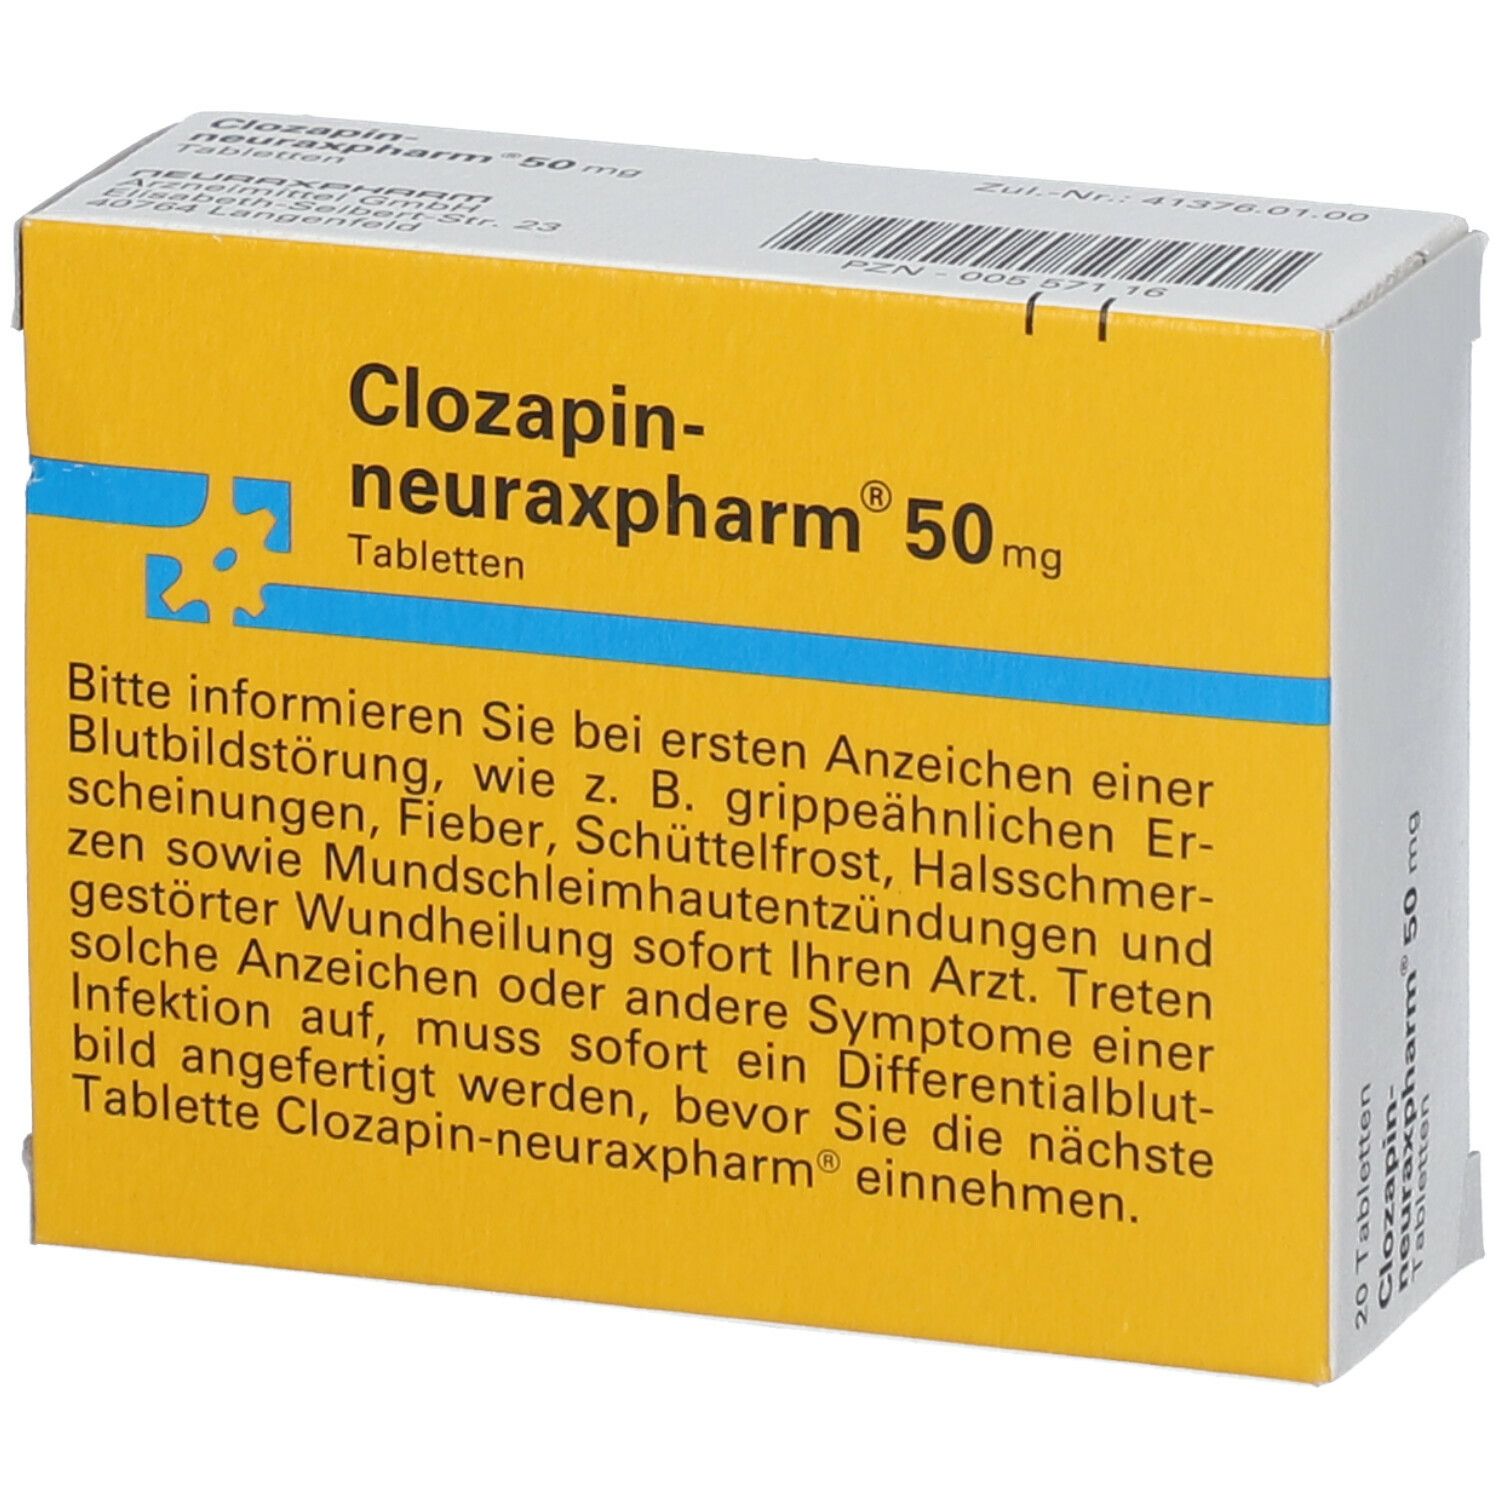 Clozapin-neuraxpharm® 50 mg